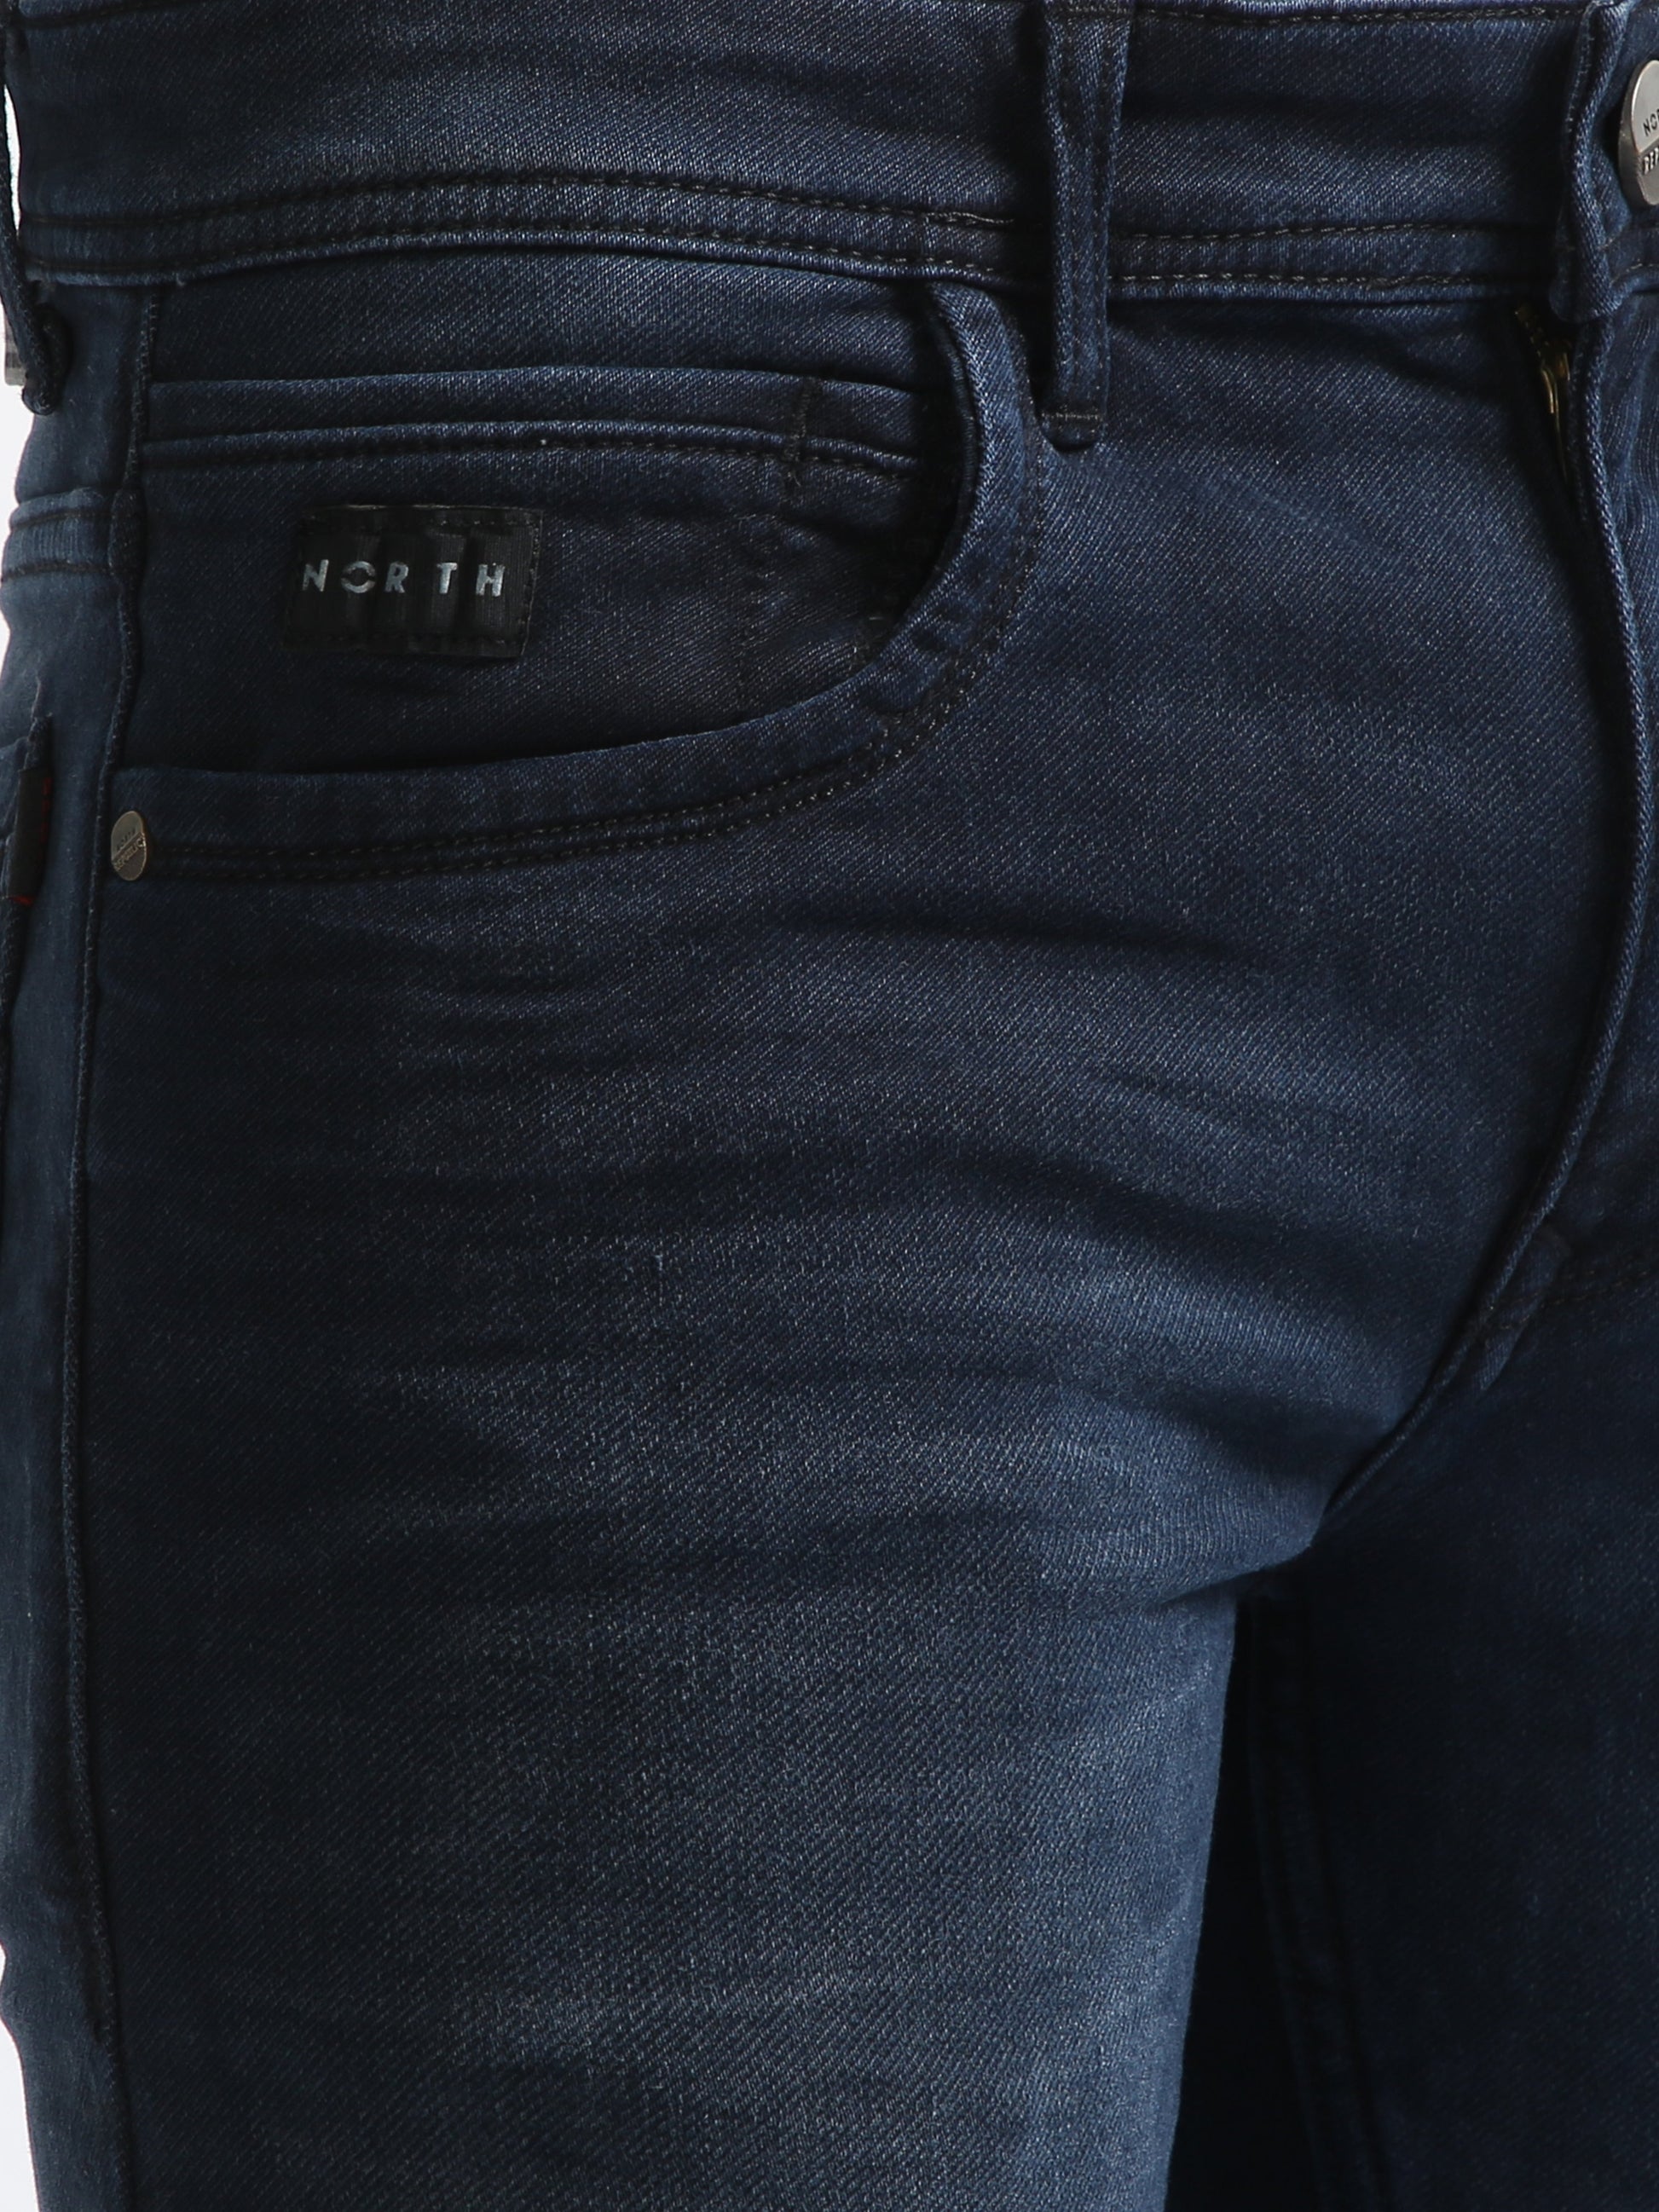 Dark Wash Men's Faded Wash Denim Jeans